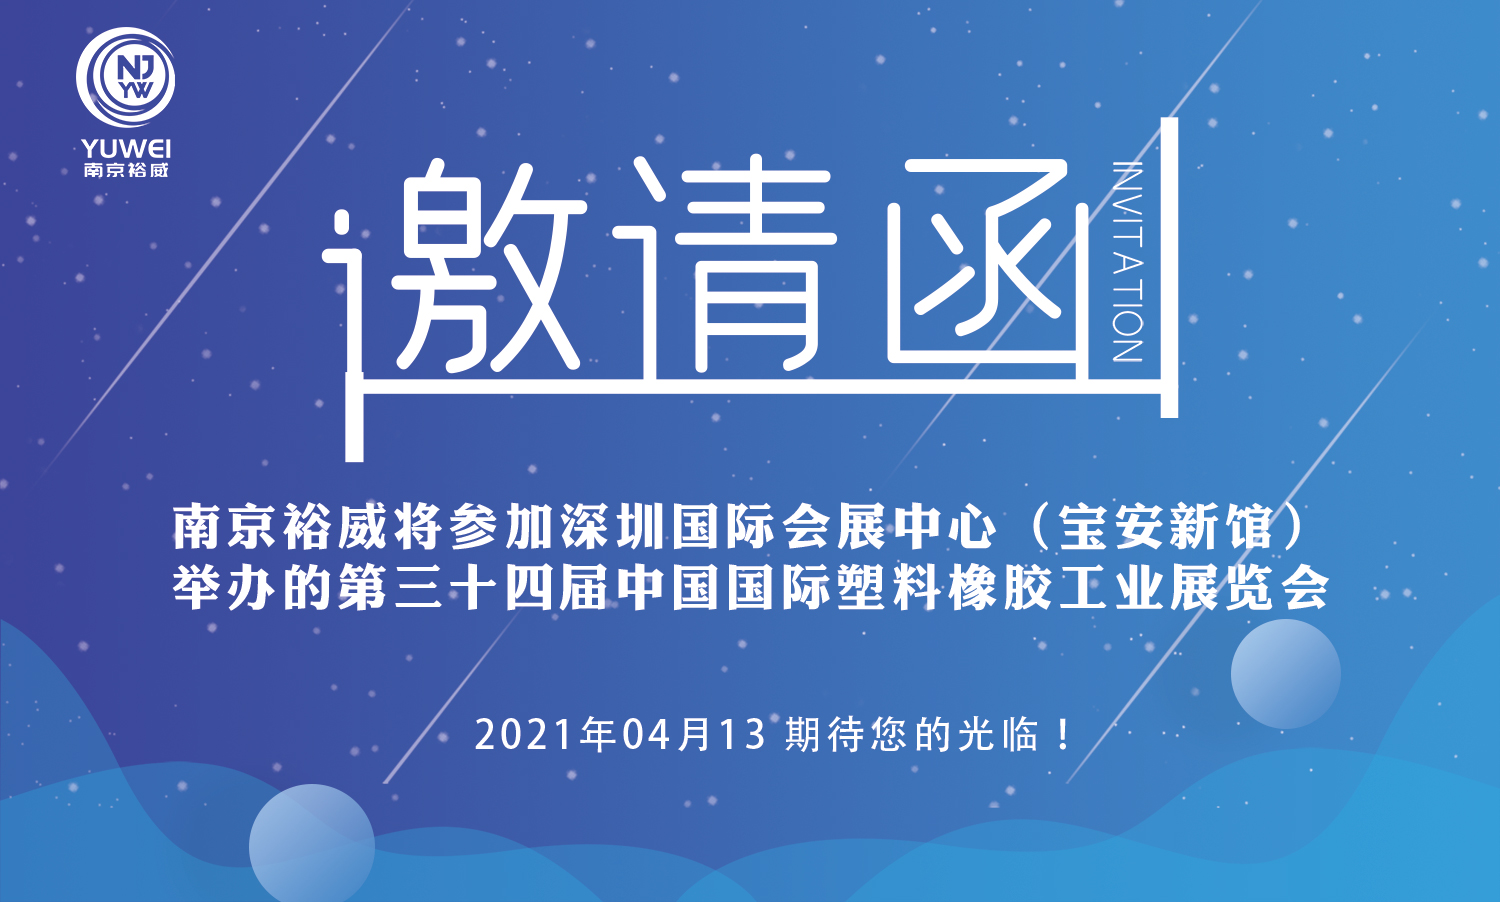 南京裕威诚邀您光临CHINAPLAS 2021国际橡塑展